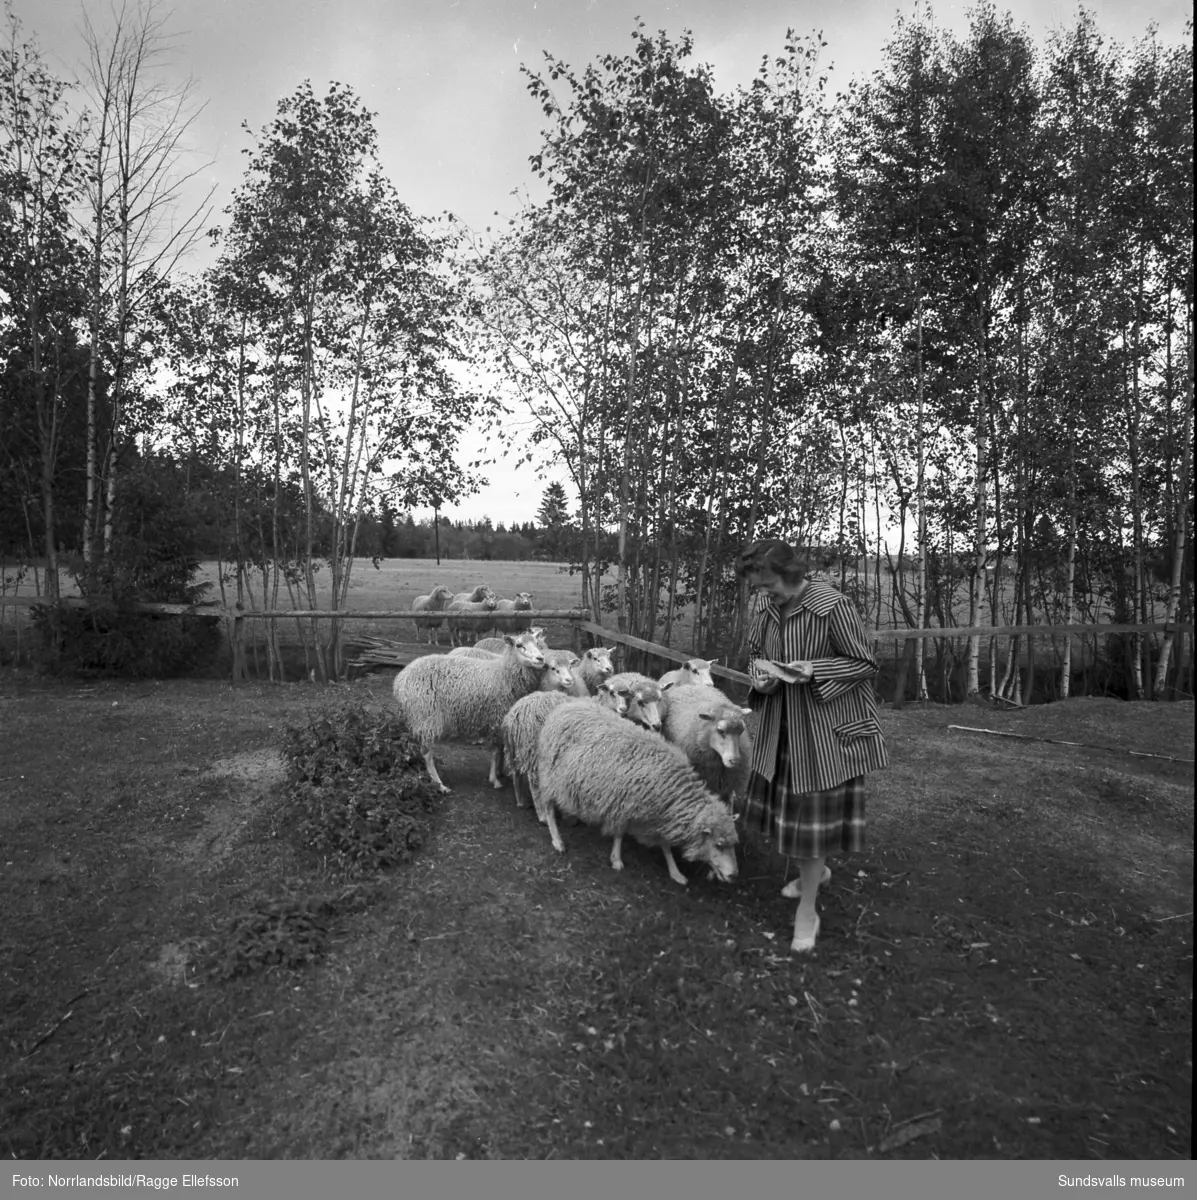 Folkskollärare Gunnar Tjernbergs lantgård i Slätt, Ovansjö, Njurunda. En flock får hanteras, bland annat så vägs en tacka, och här fanns även häst och hund. En av bilderna visar Tjernbergs yrkesroll som lärare i klassrummet och på en annan är han i skogen med yxan i högsta hugg.